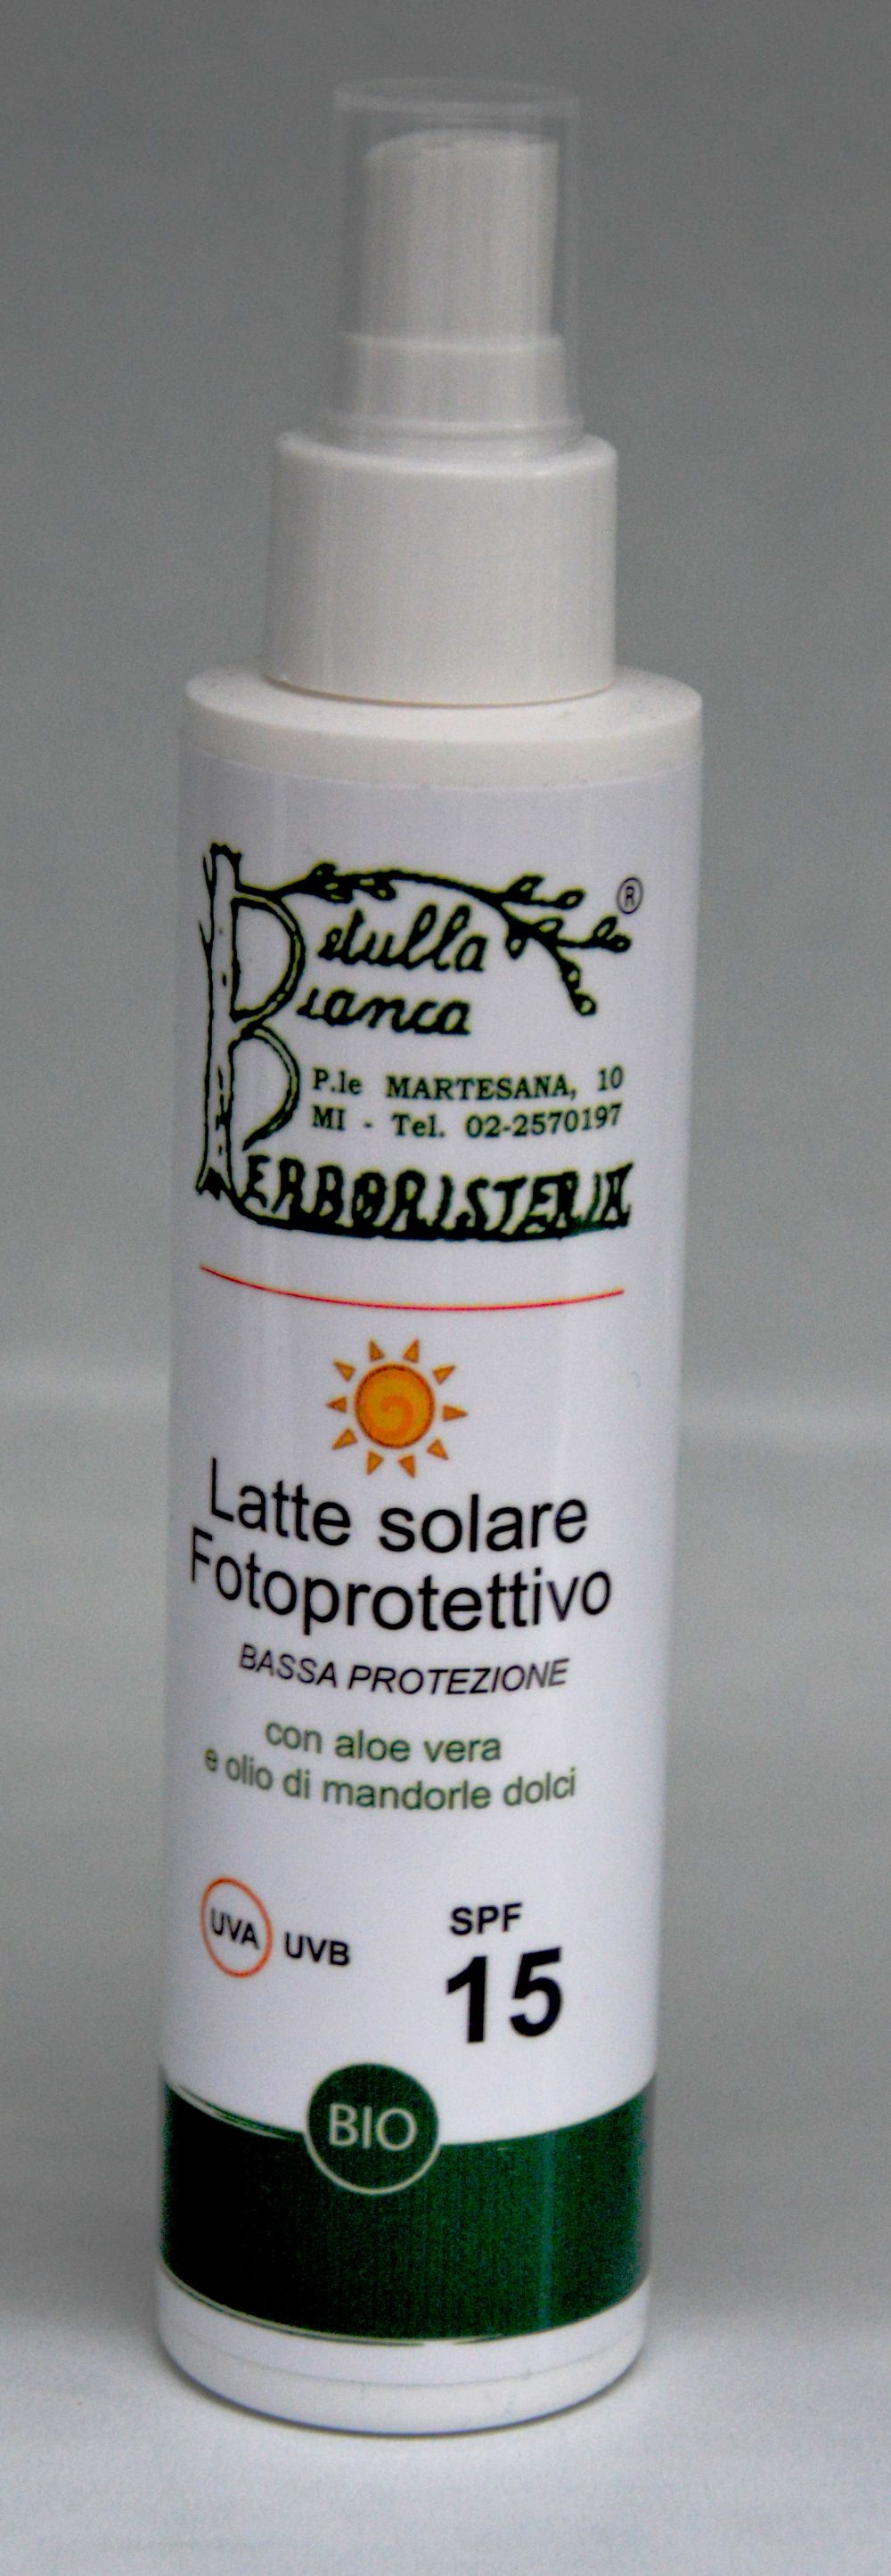 Latte solare spray fotoprotettivo bassa protezione spf 15